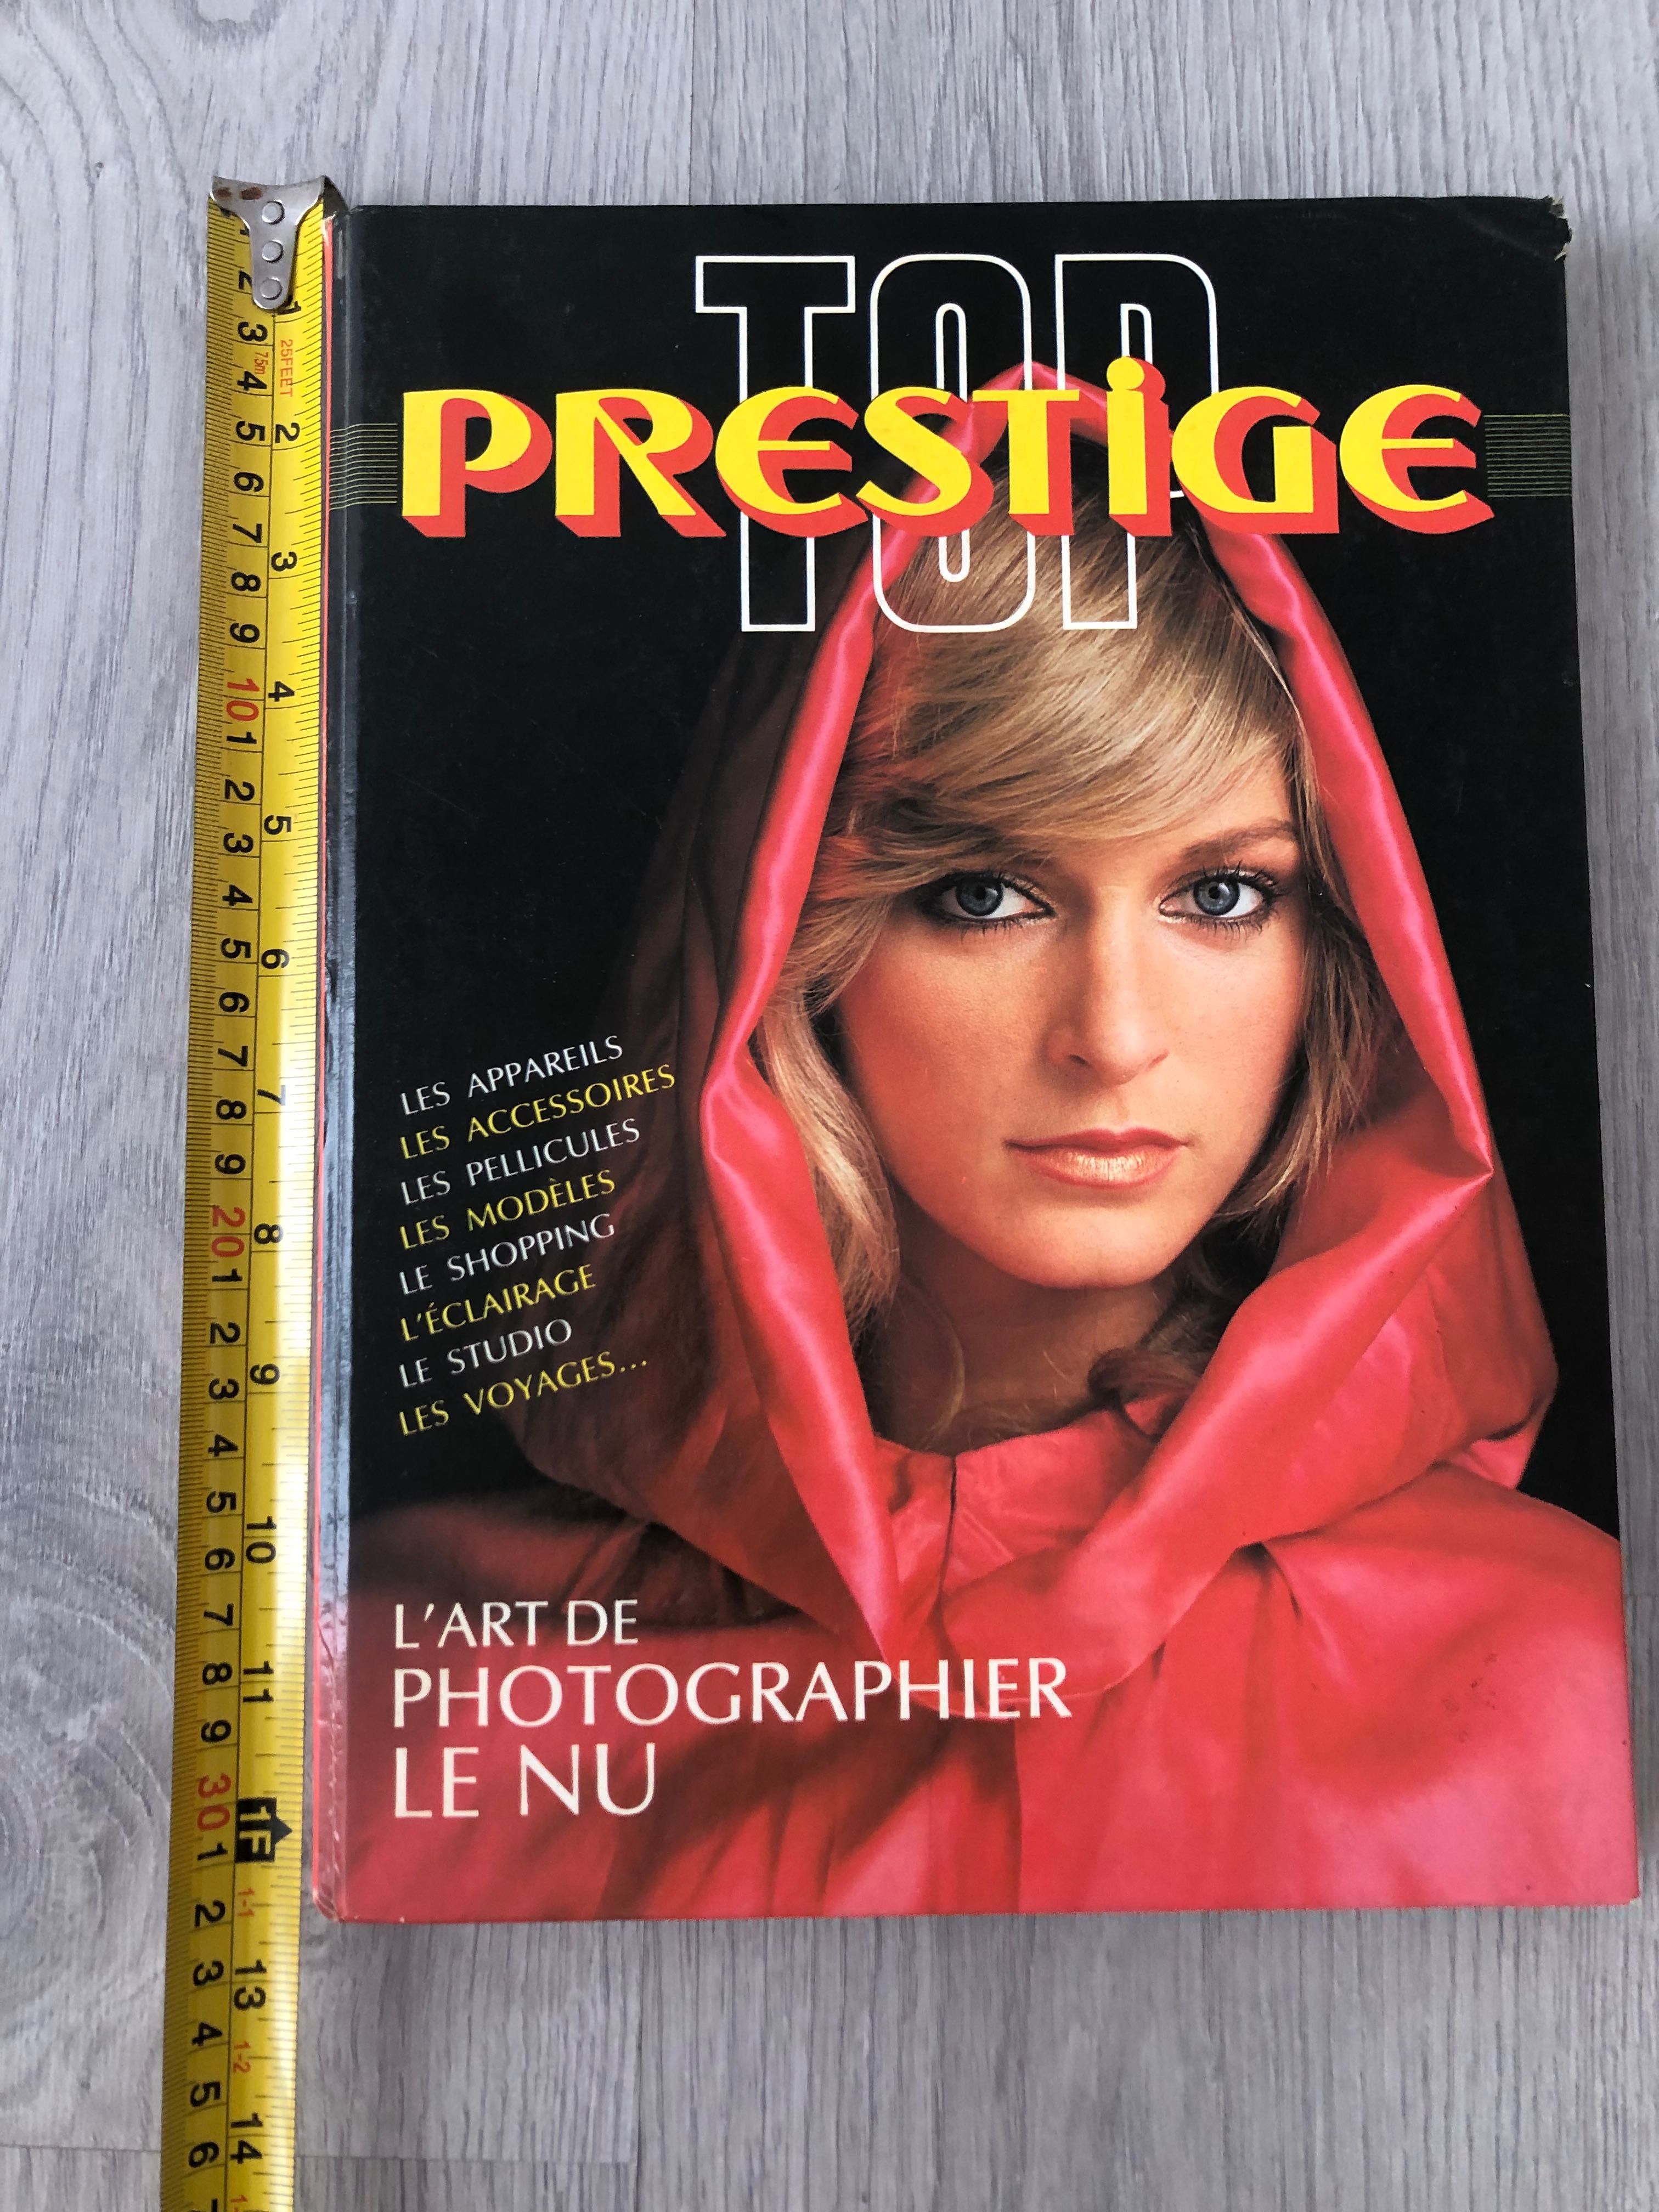 Livro de fotografia técnica glamour nu artístico. Francês ano 1982